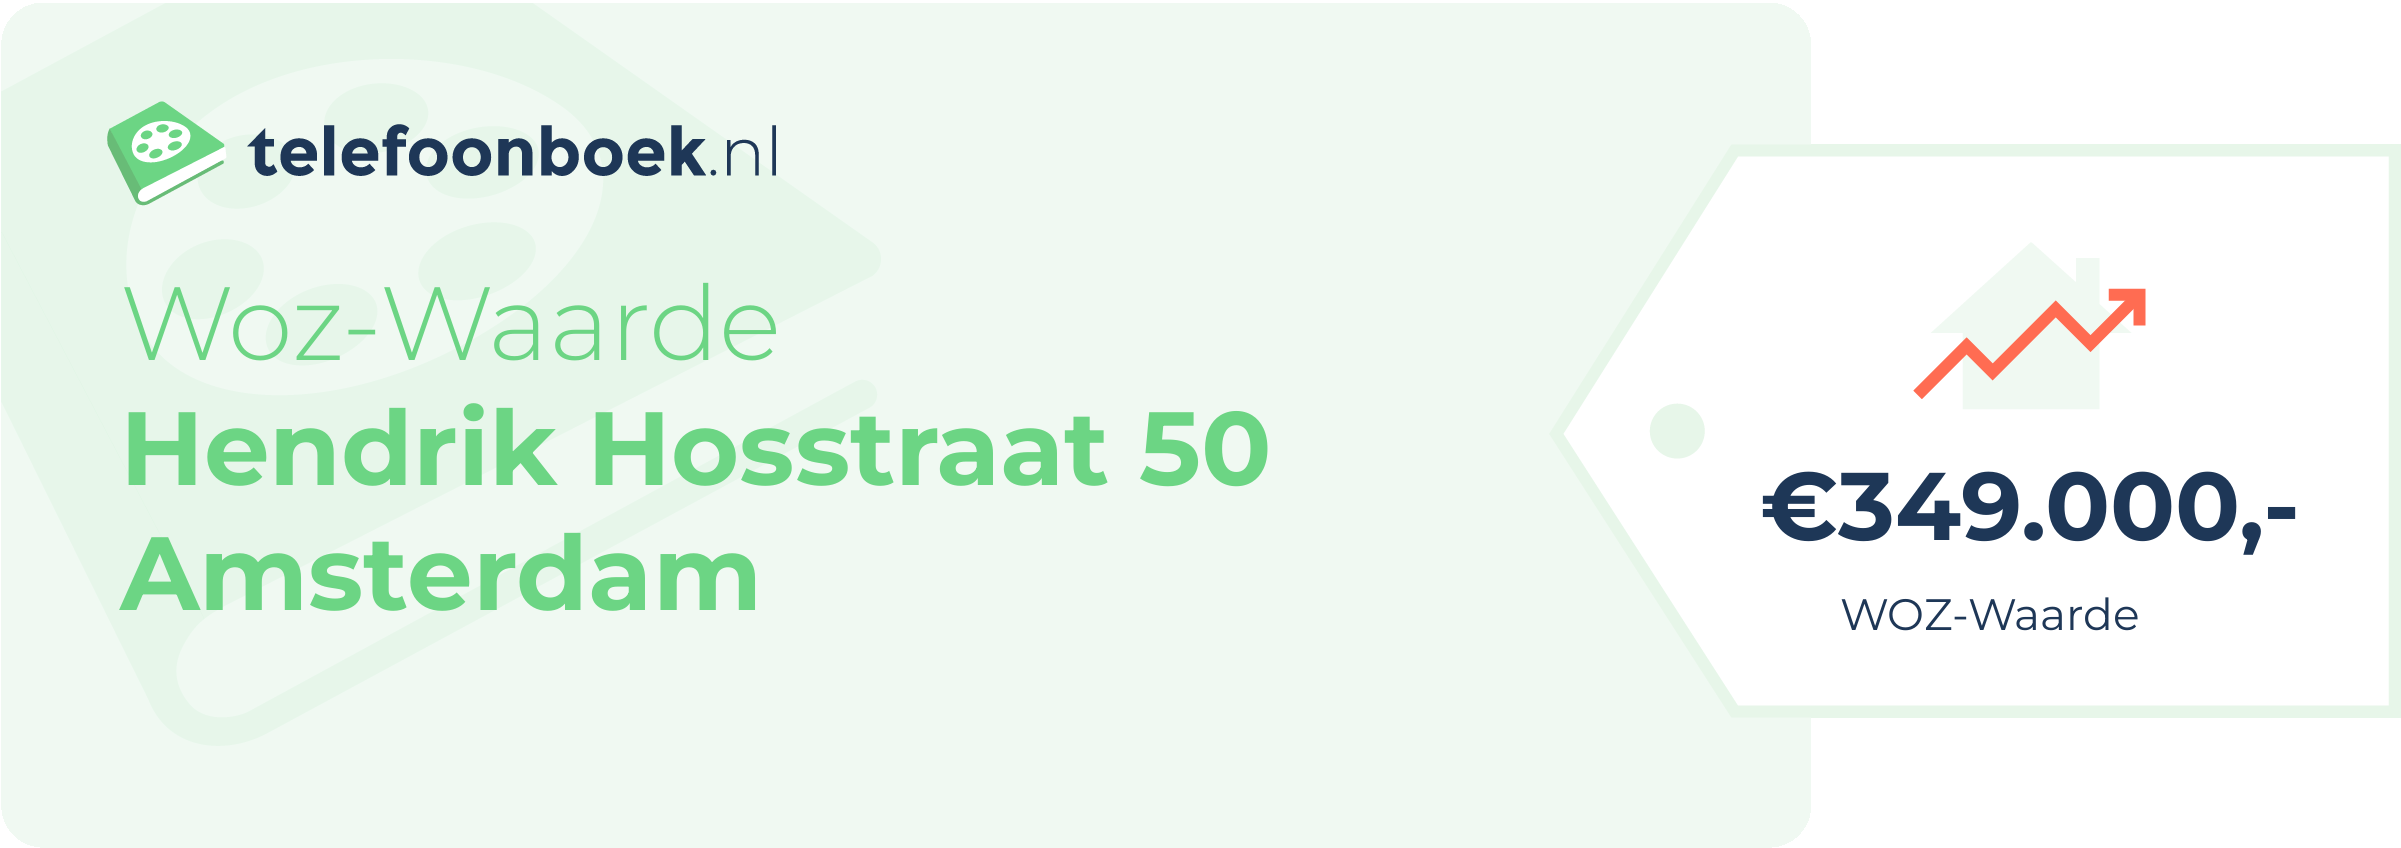 WOZ-waarde Hendrik Hosstraat 50 Amsterdam